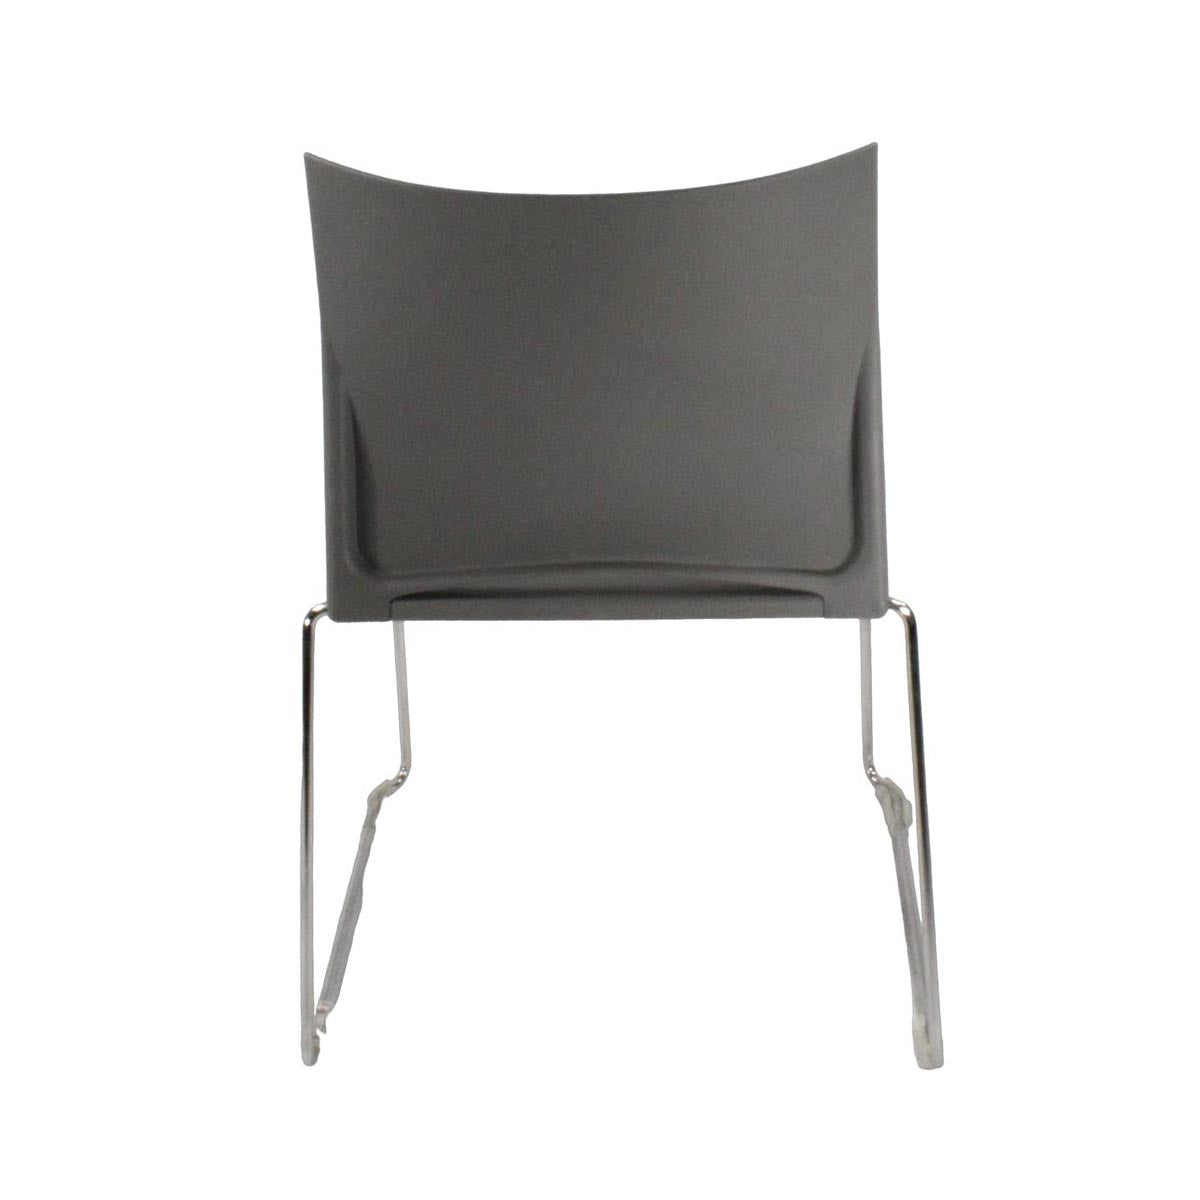 Herman Miller: Pronta stapelstoel in grijs - gerenoveerd